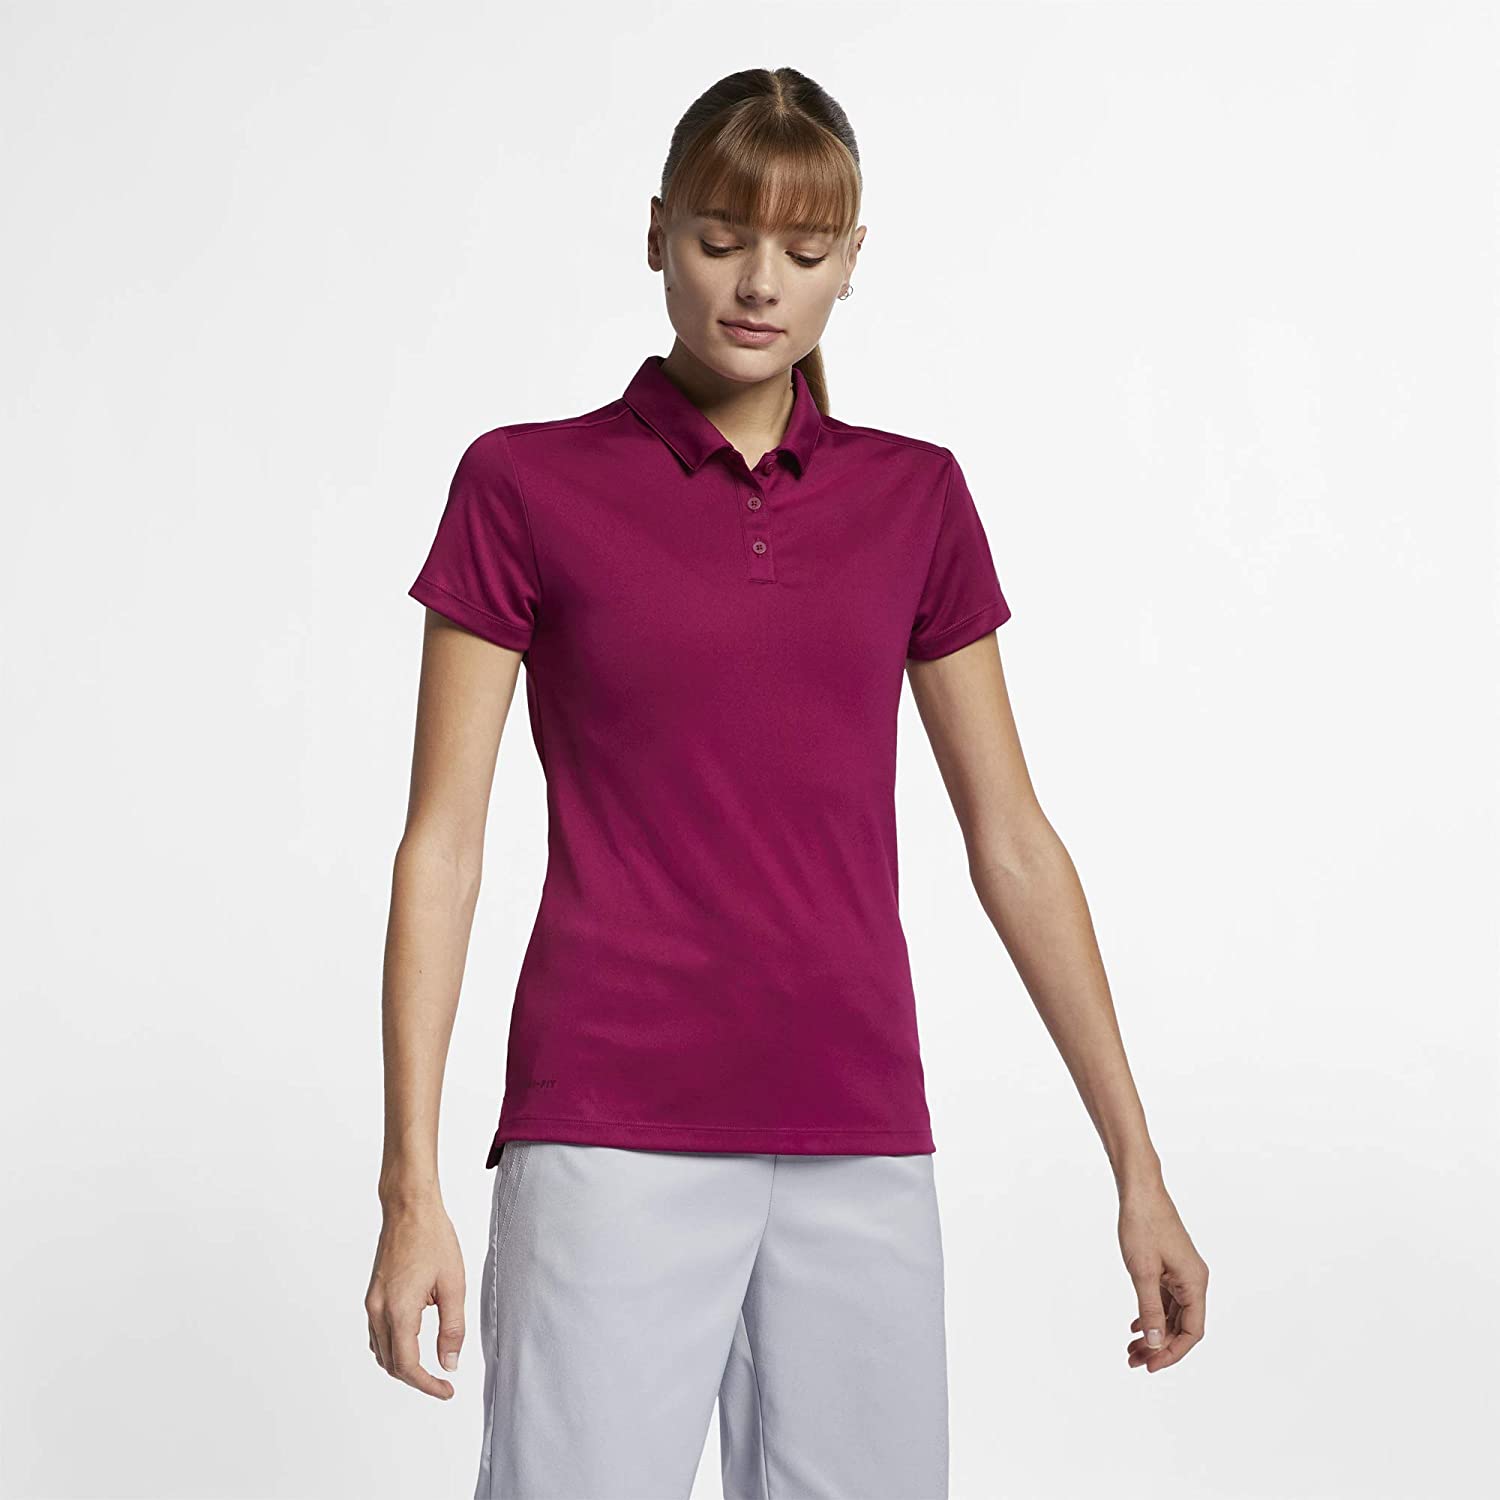 Nike Womens Dri Fit Polo Shirt